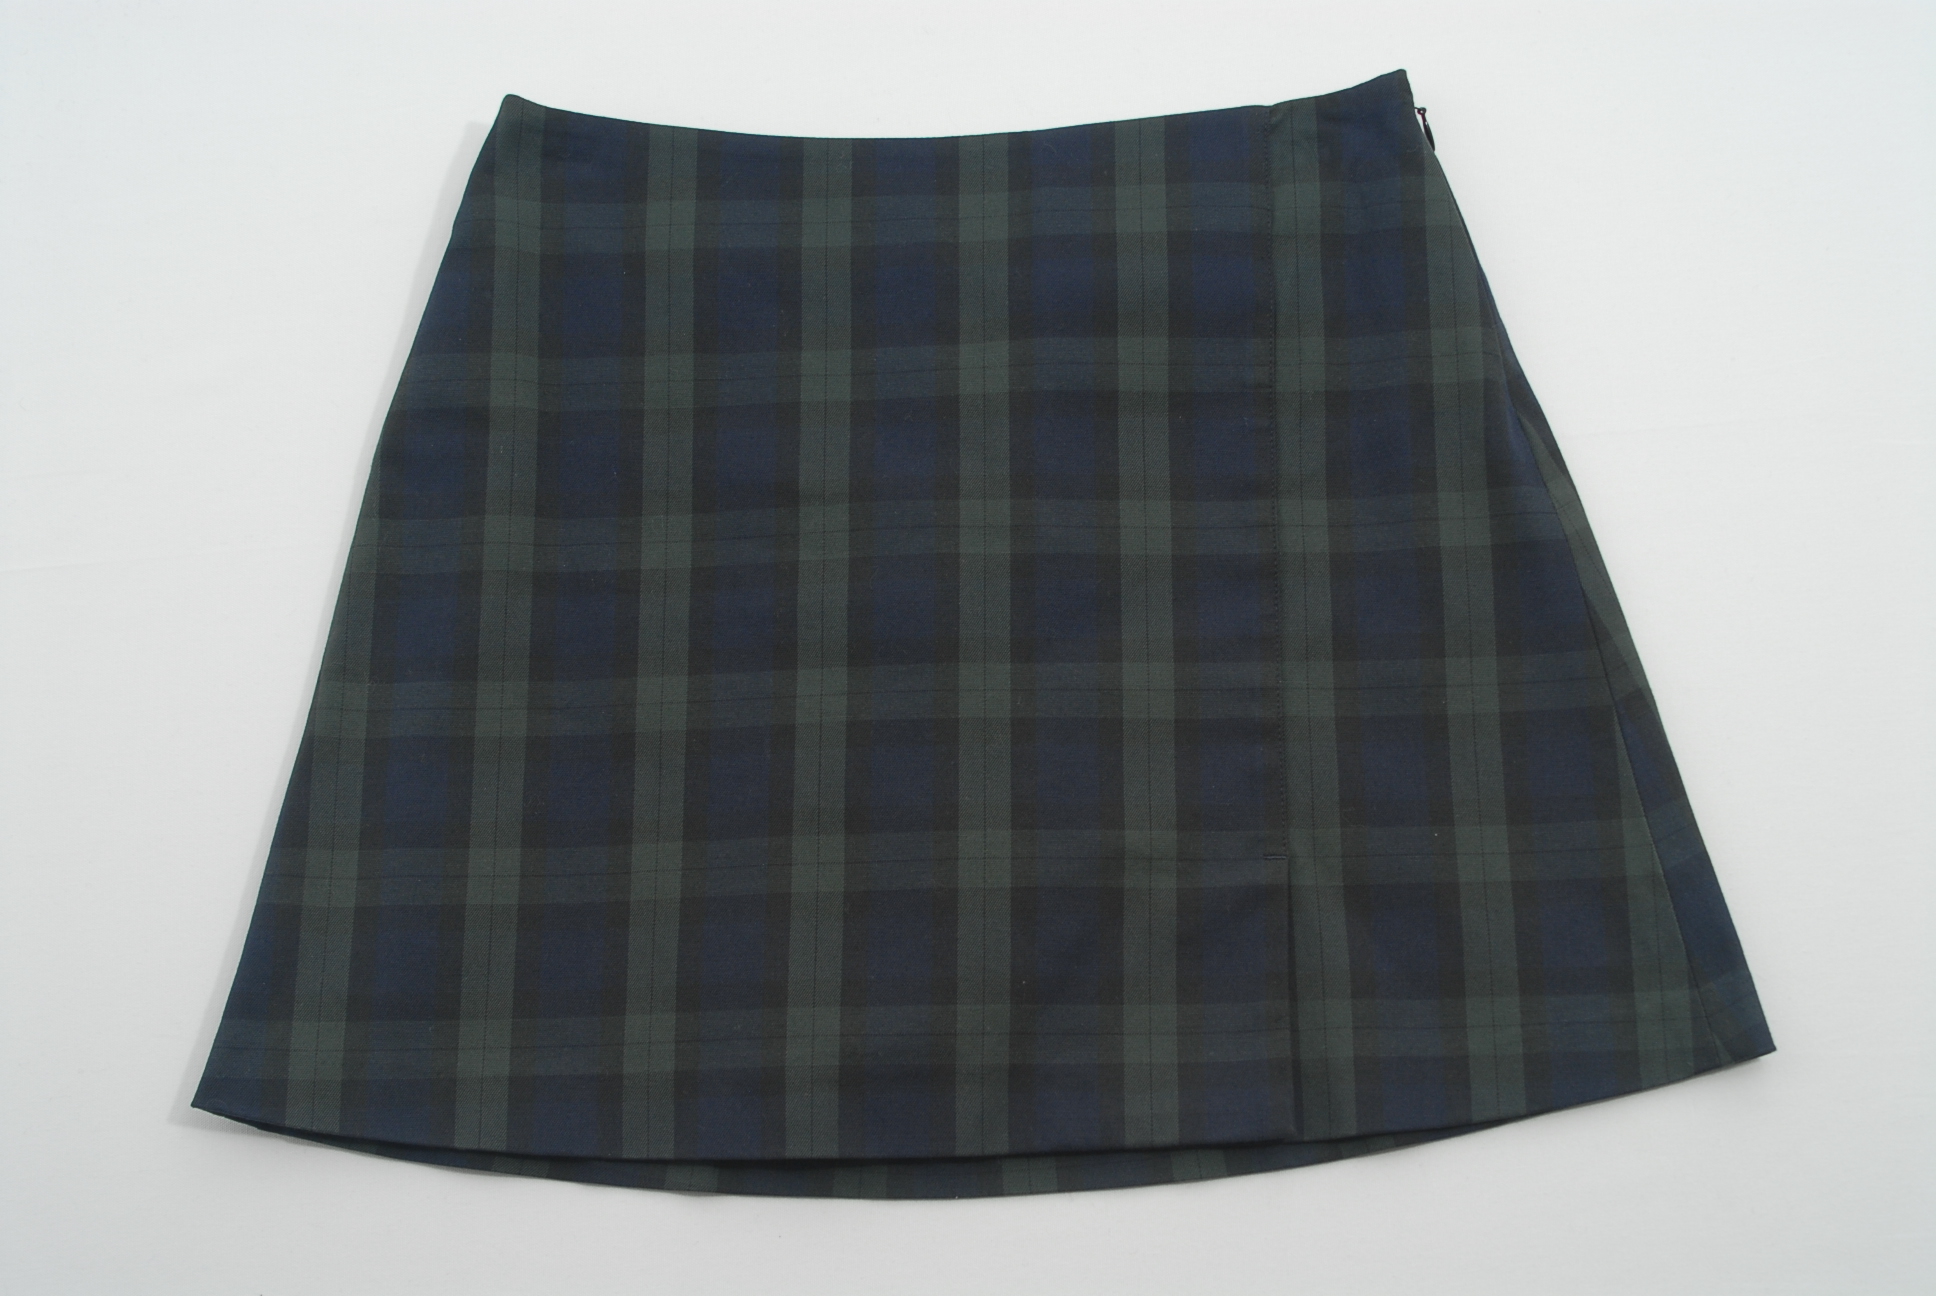 ビームスゴルフ☆スカート☆一体型インナーパンツ付き☆紺×緑/チェック 